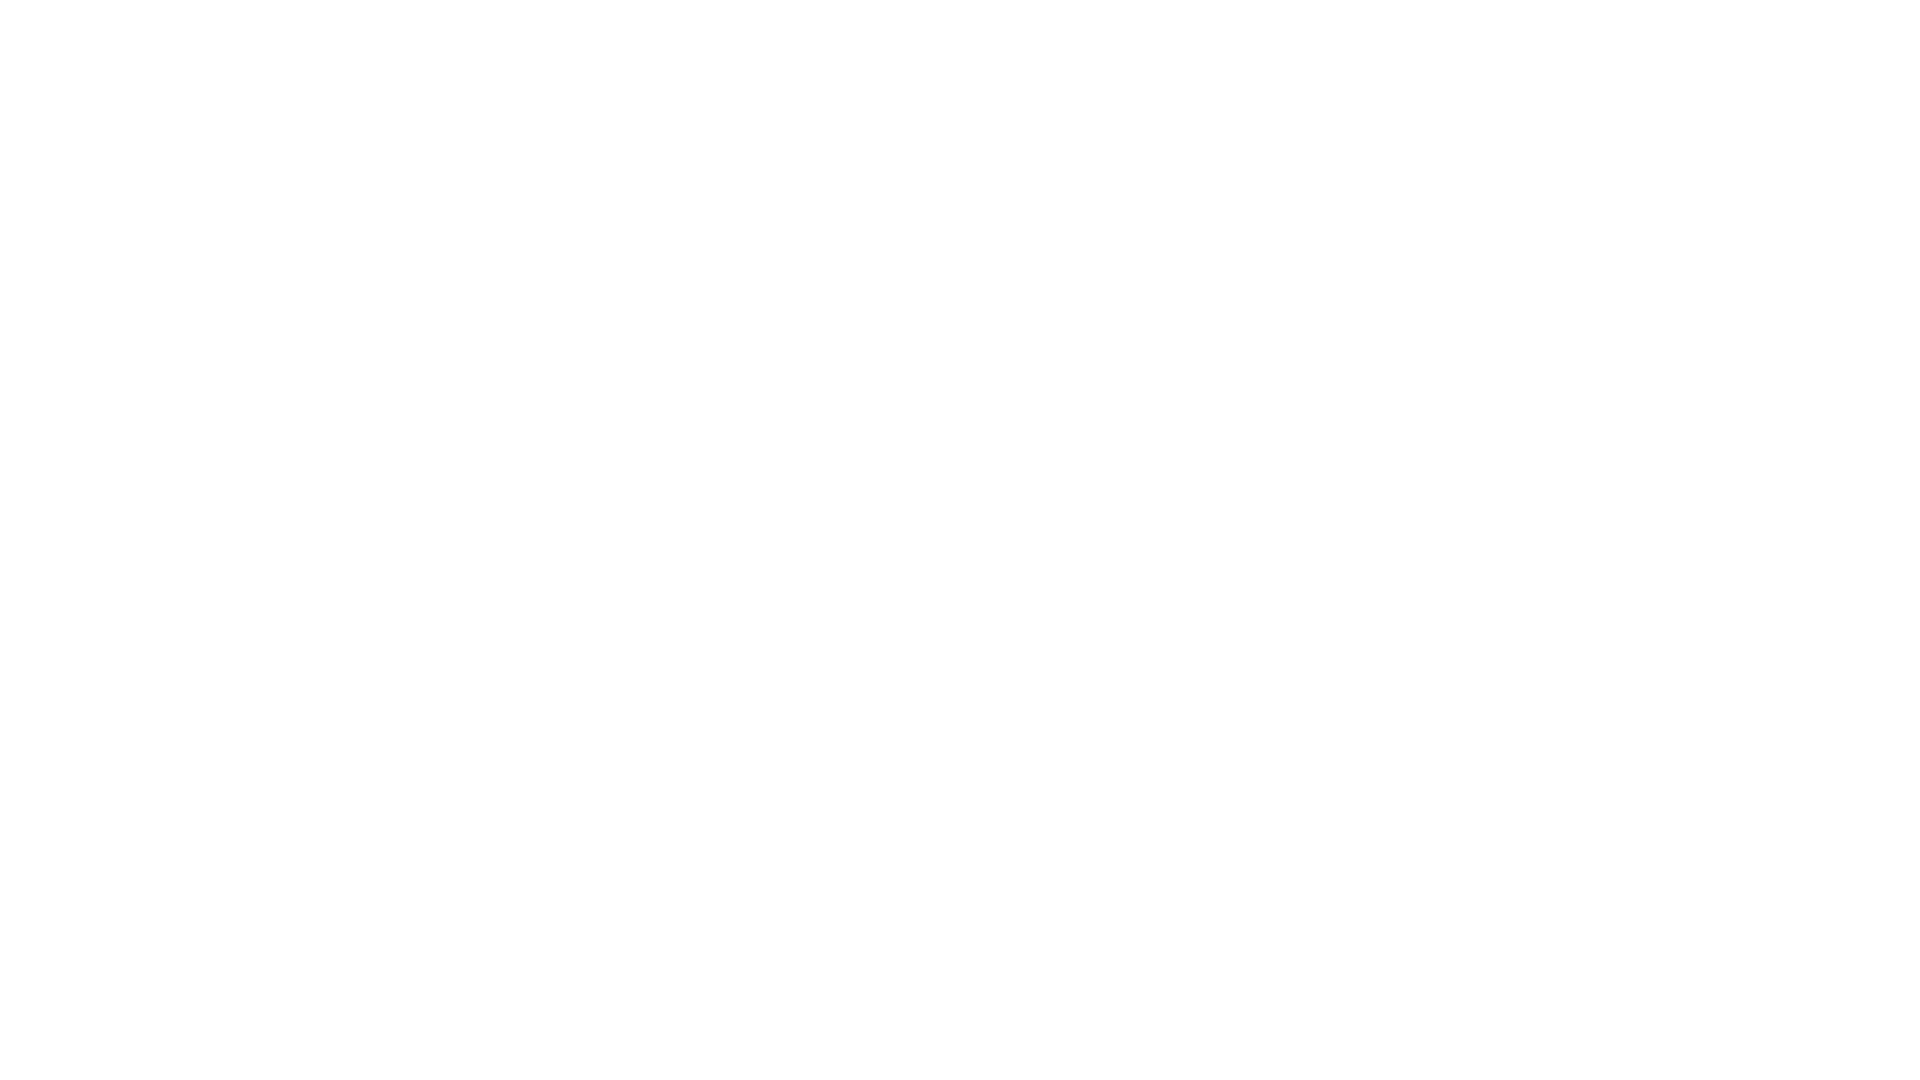 The Reservest Logos-white